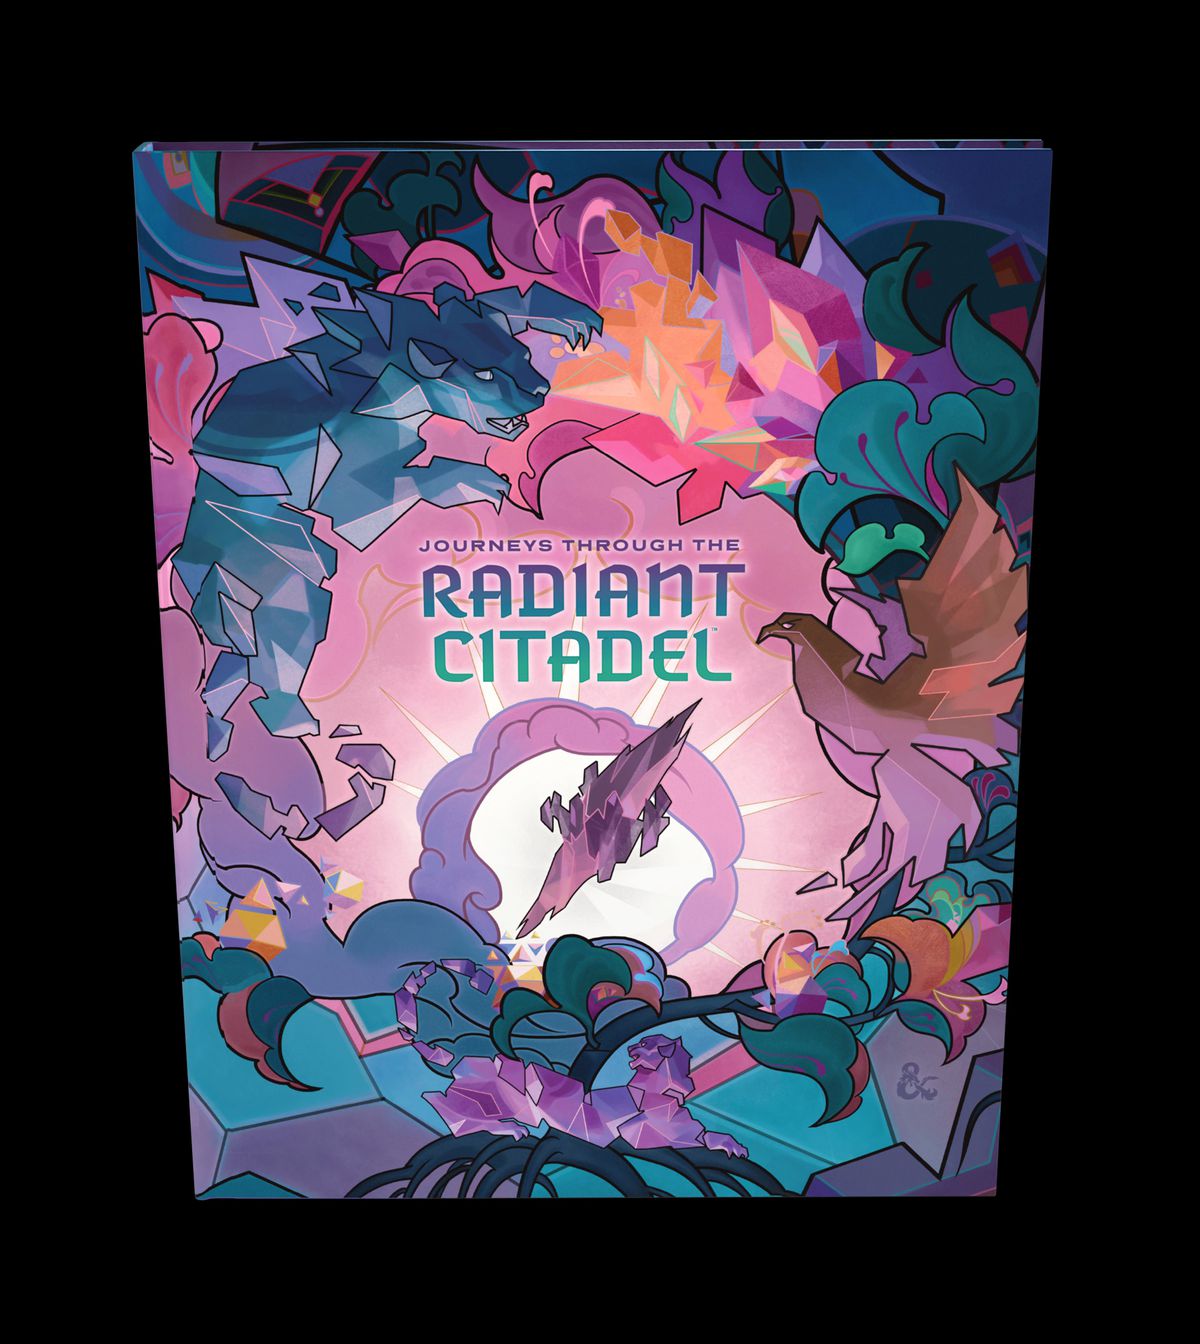 Una copertina alternativa per Radiant Citadel, pesante sui pastelli e sulle forme geometriche.